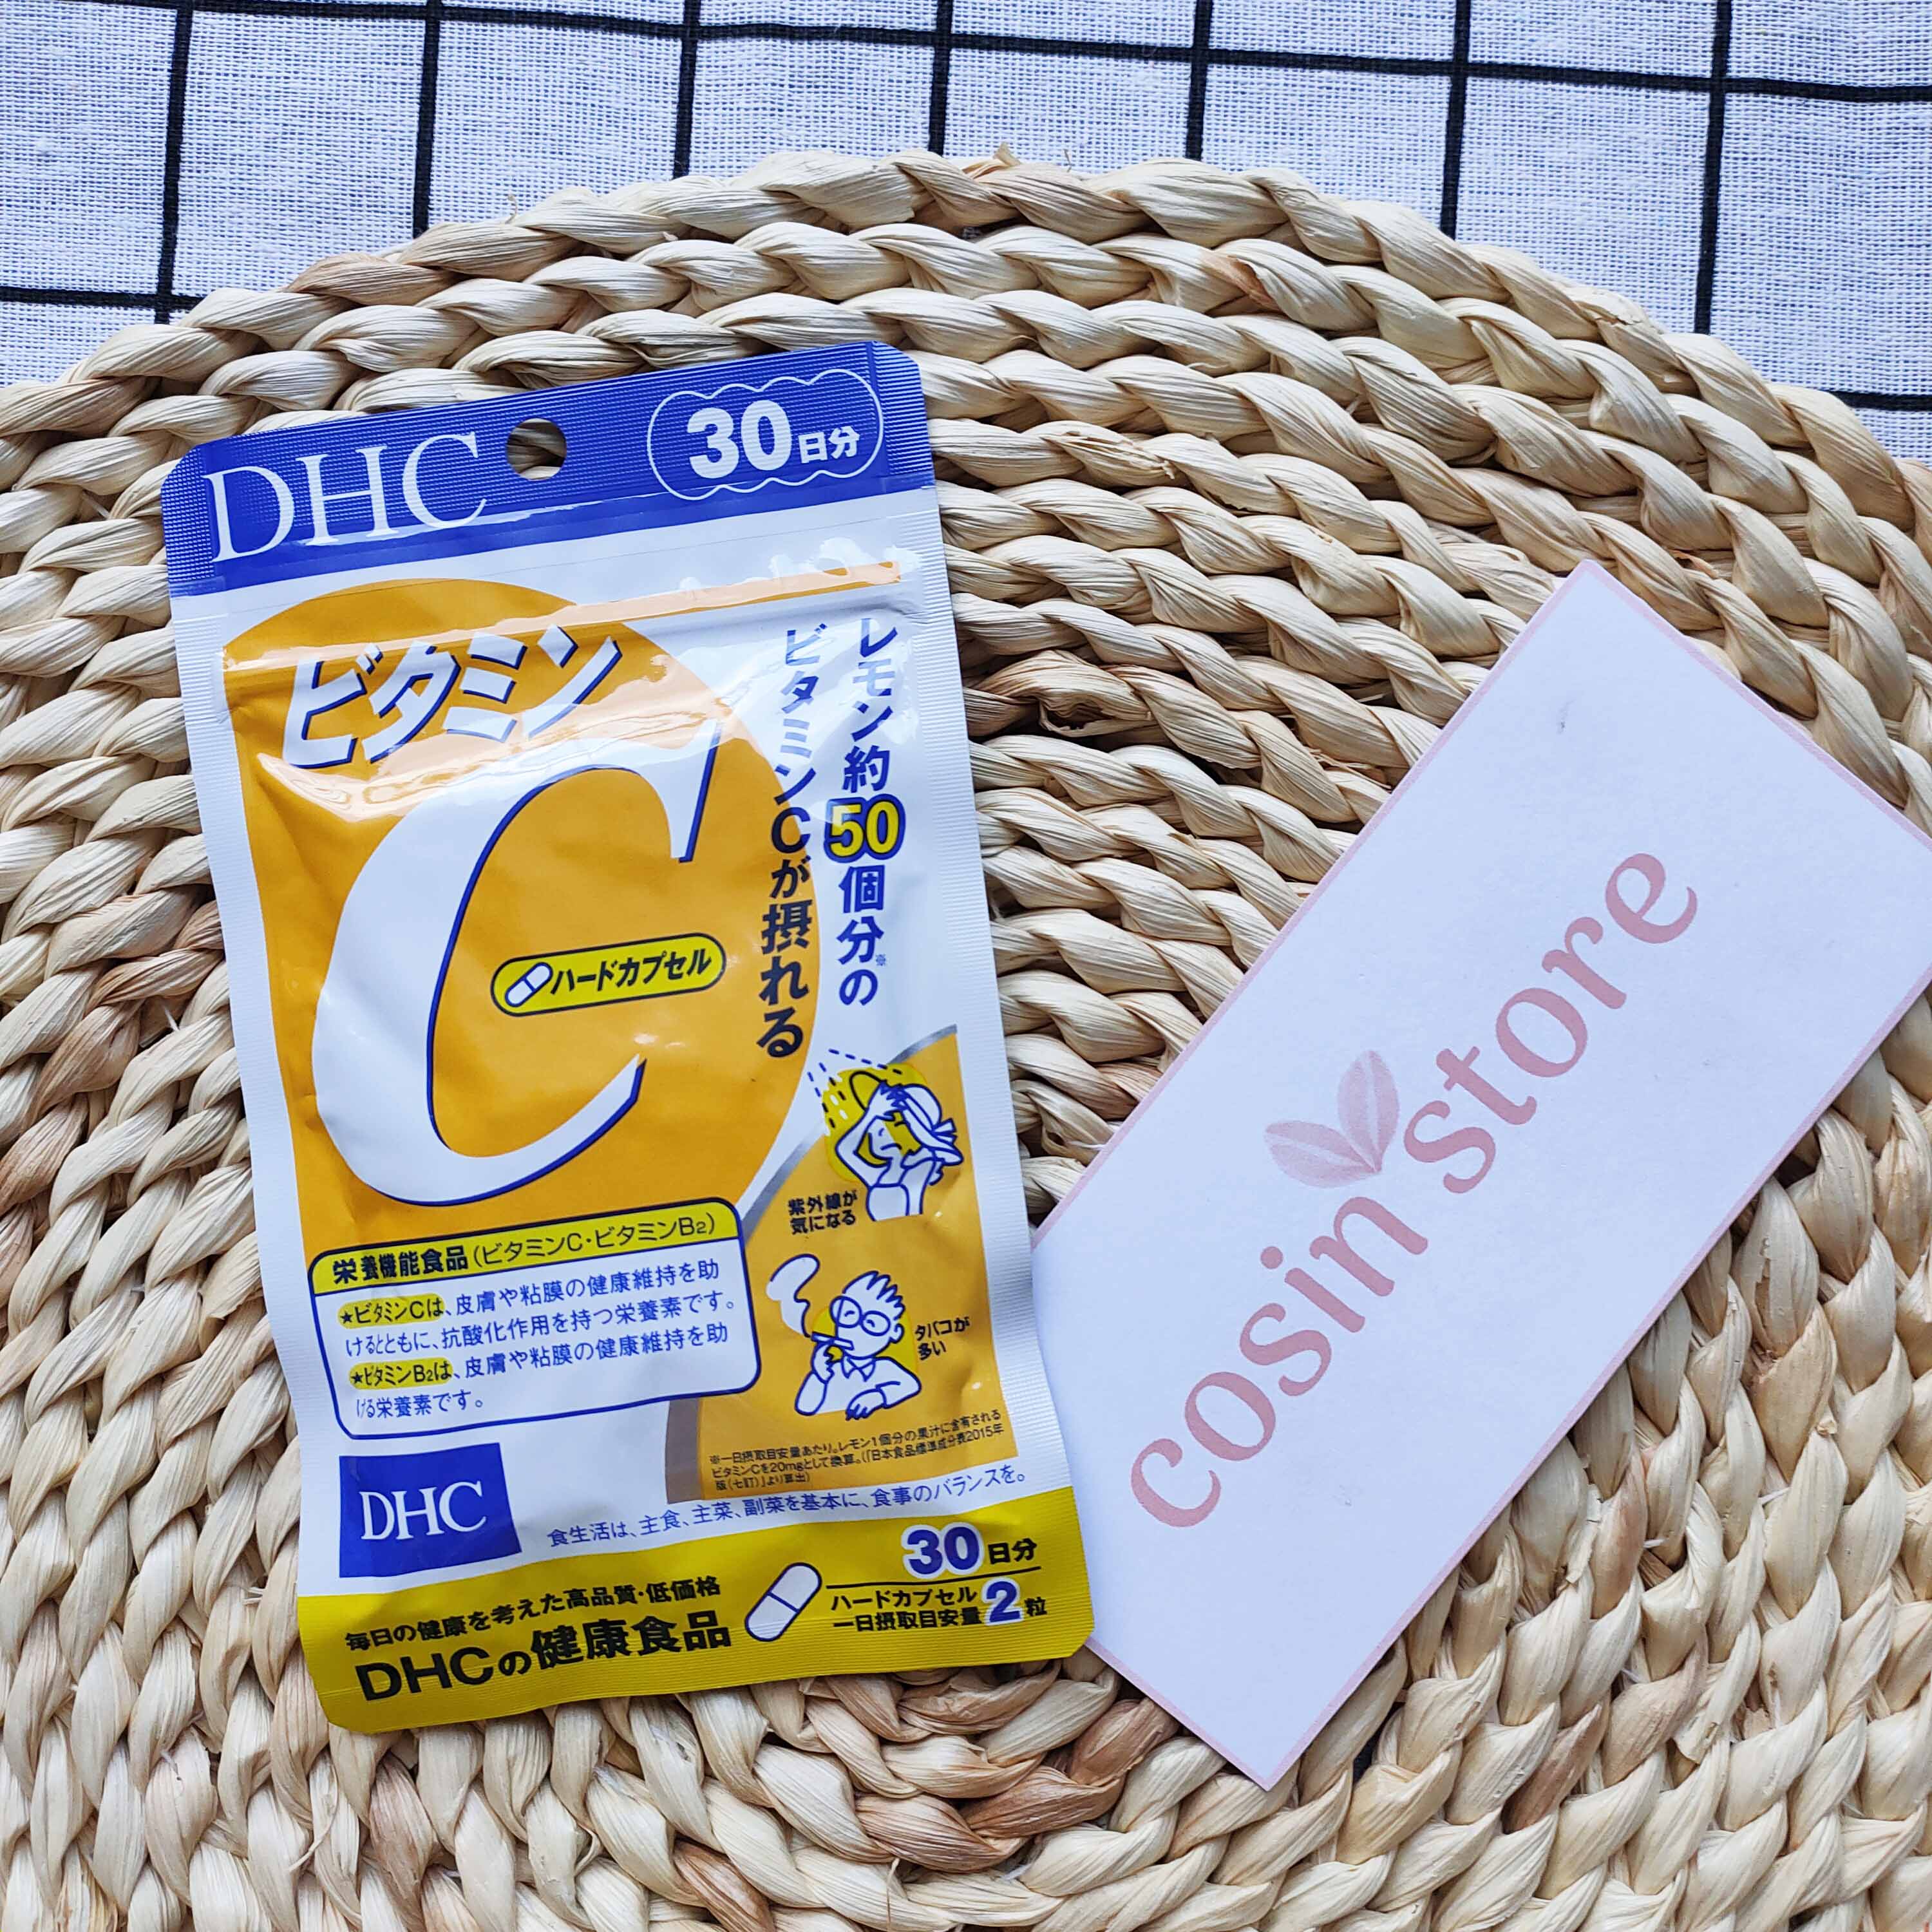 Viên uống DHC Vitamin C Hard Capsule túi 60 viên 30 ngày của Nhật Bản dùng tăng sức đề kháng, hỗ trợ sáng da - Cosin Store